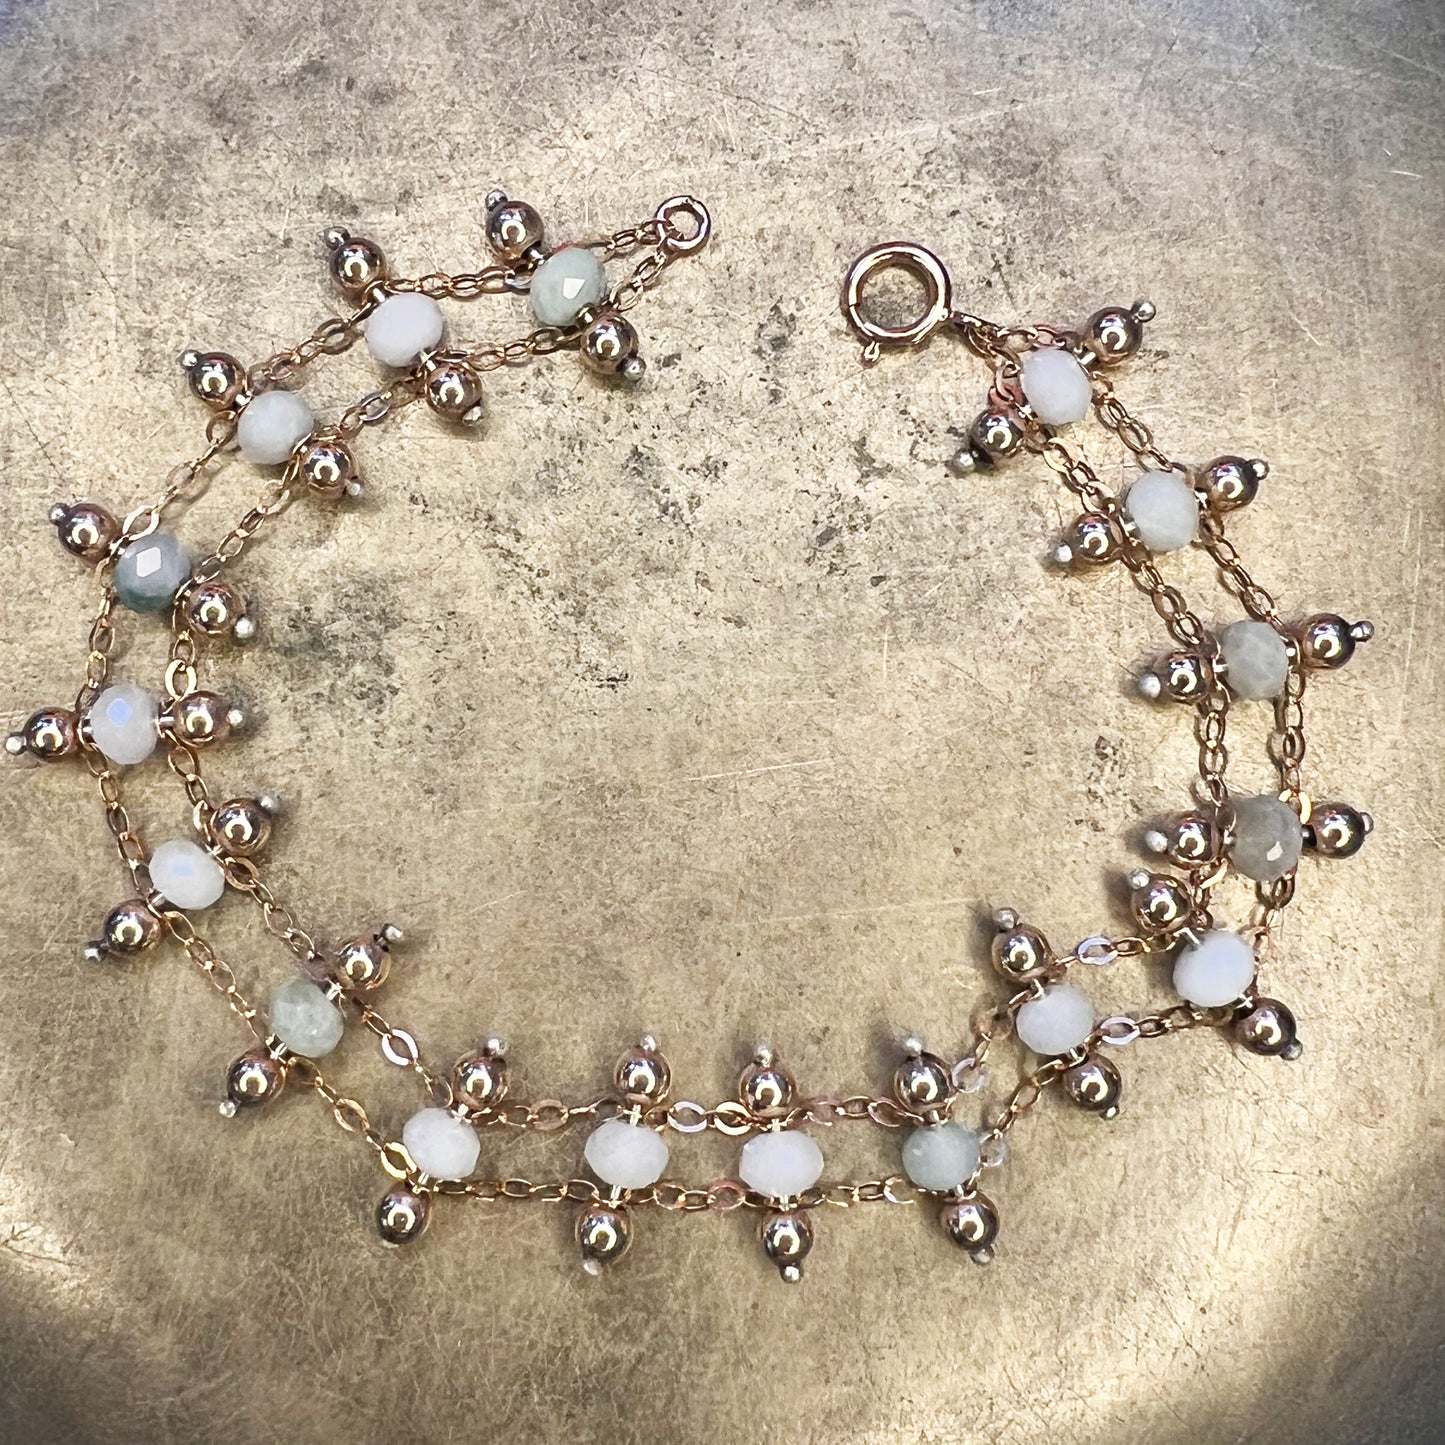 Gemstone Stacker Bracelet - Burma Jade + Rose Gold-Filled